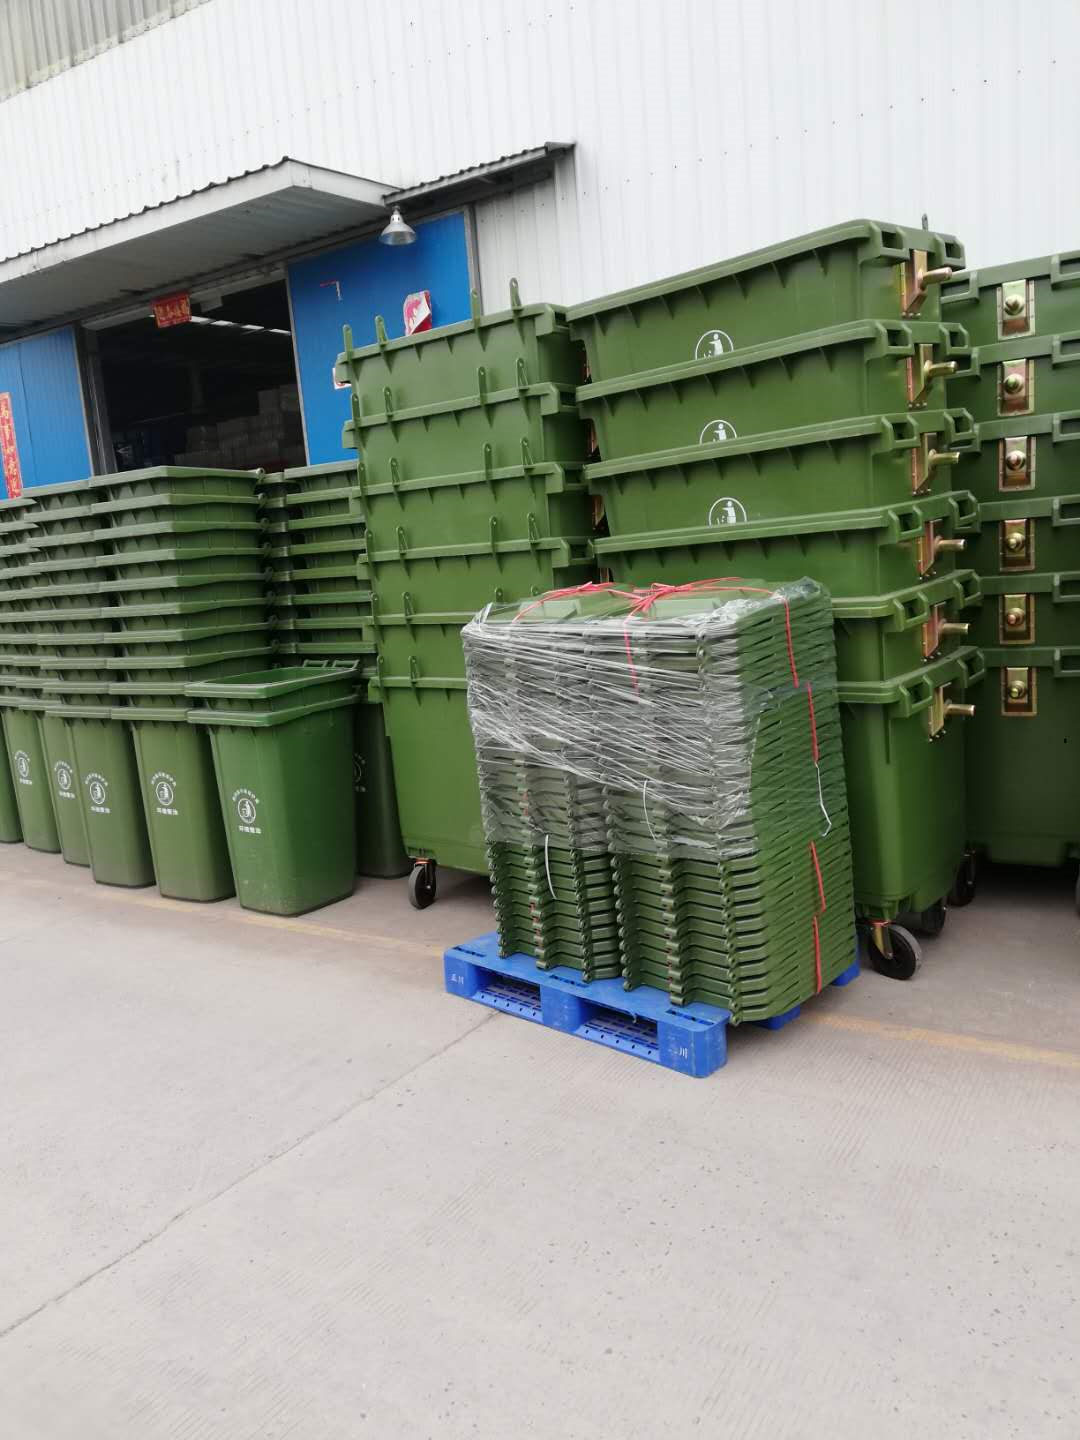 贵州六盘水小区物业垃圾桶垃圾桶价格表